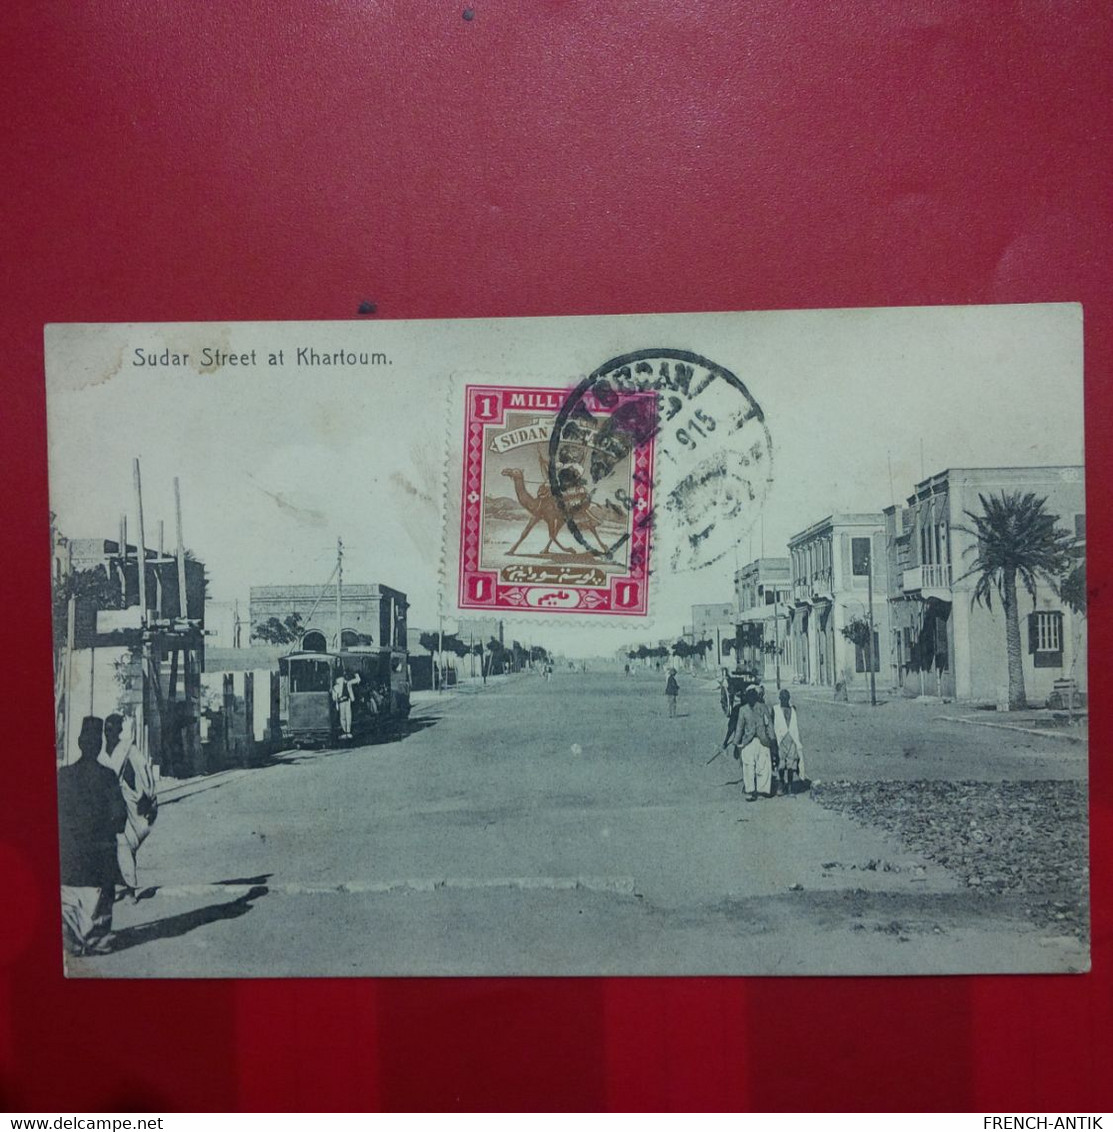 SUDAR STREET AT KHARTOUM TRAMWAY - Sudan